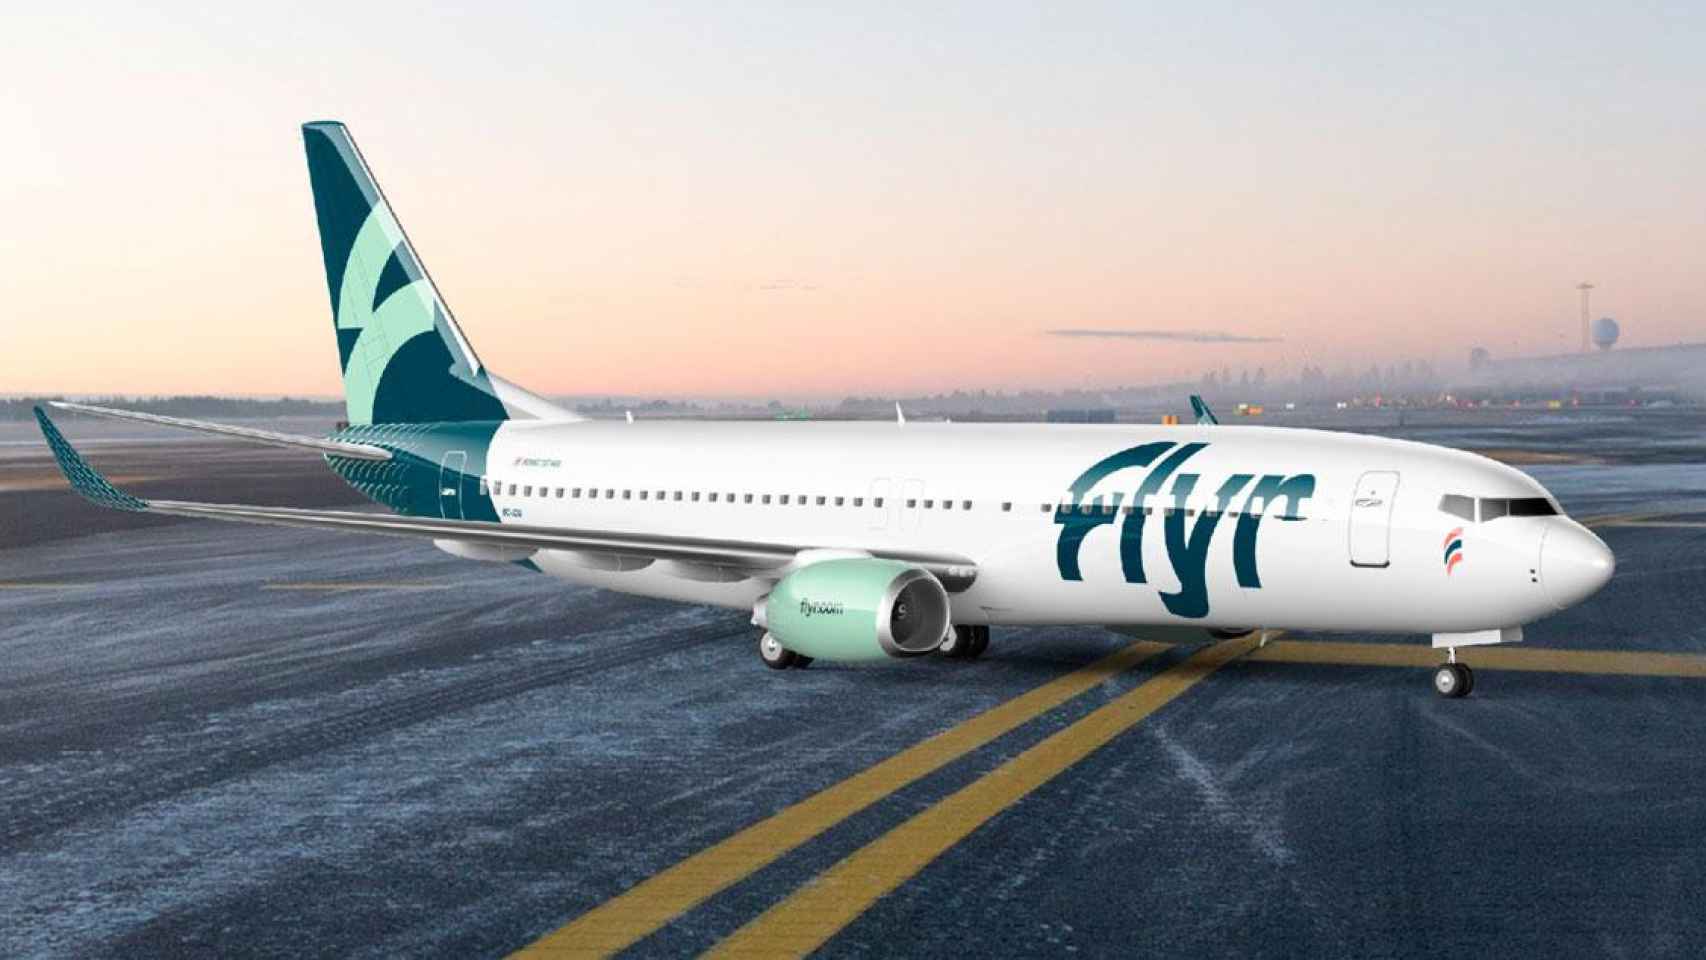 Librea de Flyr, la nueva aerolínea de bajo coste nacida en Noruega durante la pandemia / CG